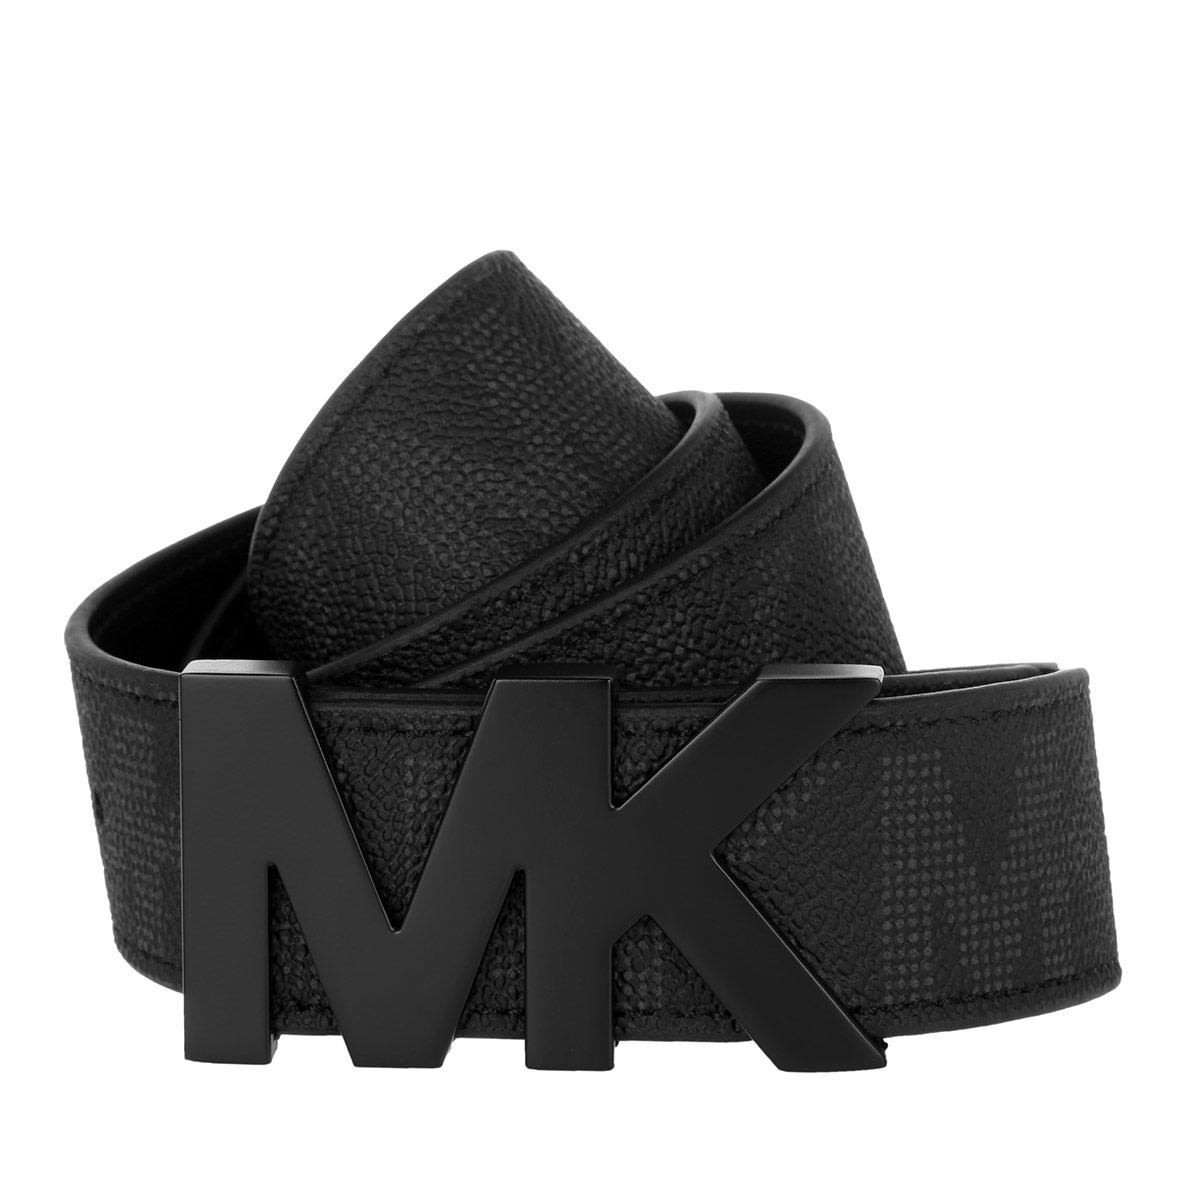 Michael Kors Synthetic Mk Hardware Men's Belt Black for Men - Lyst